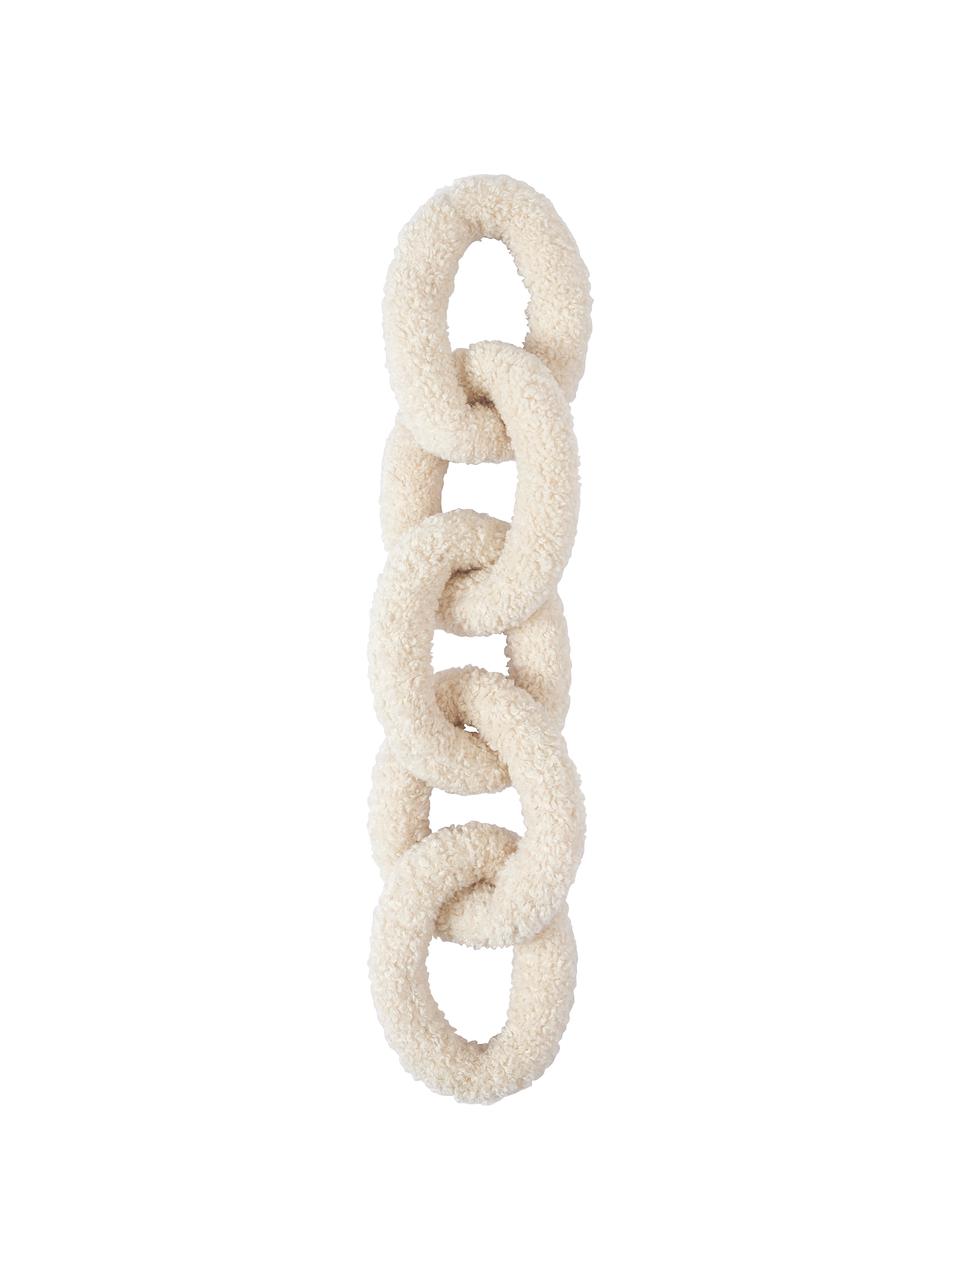 Teddy-Kissen Chain, 100 % Polyester (Teddyfell), Cremeweiß, B 60 x T 20 cm